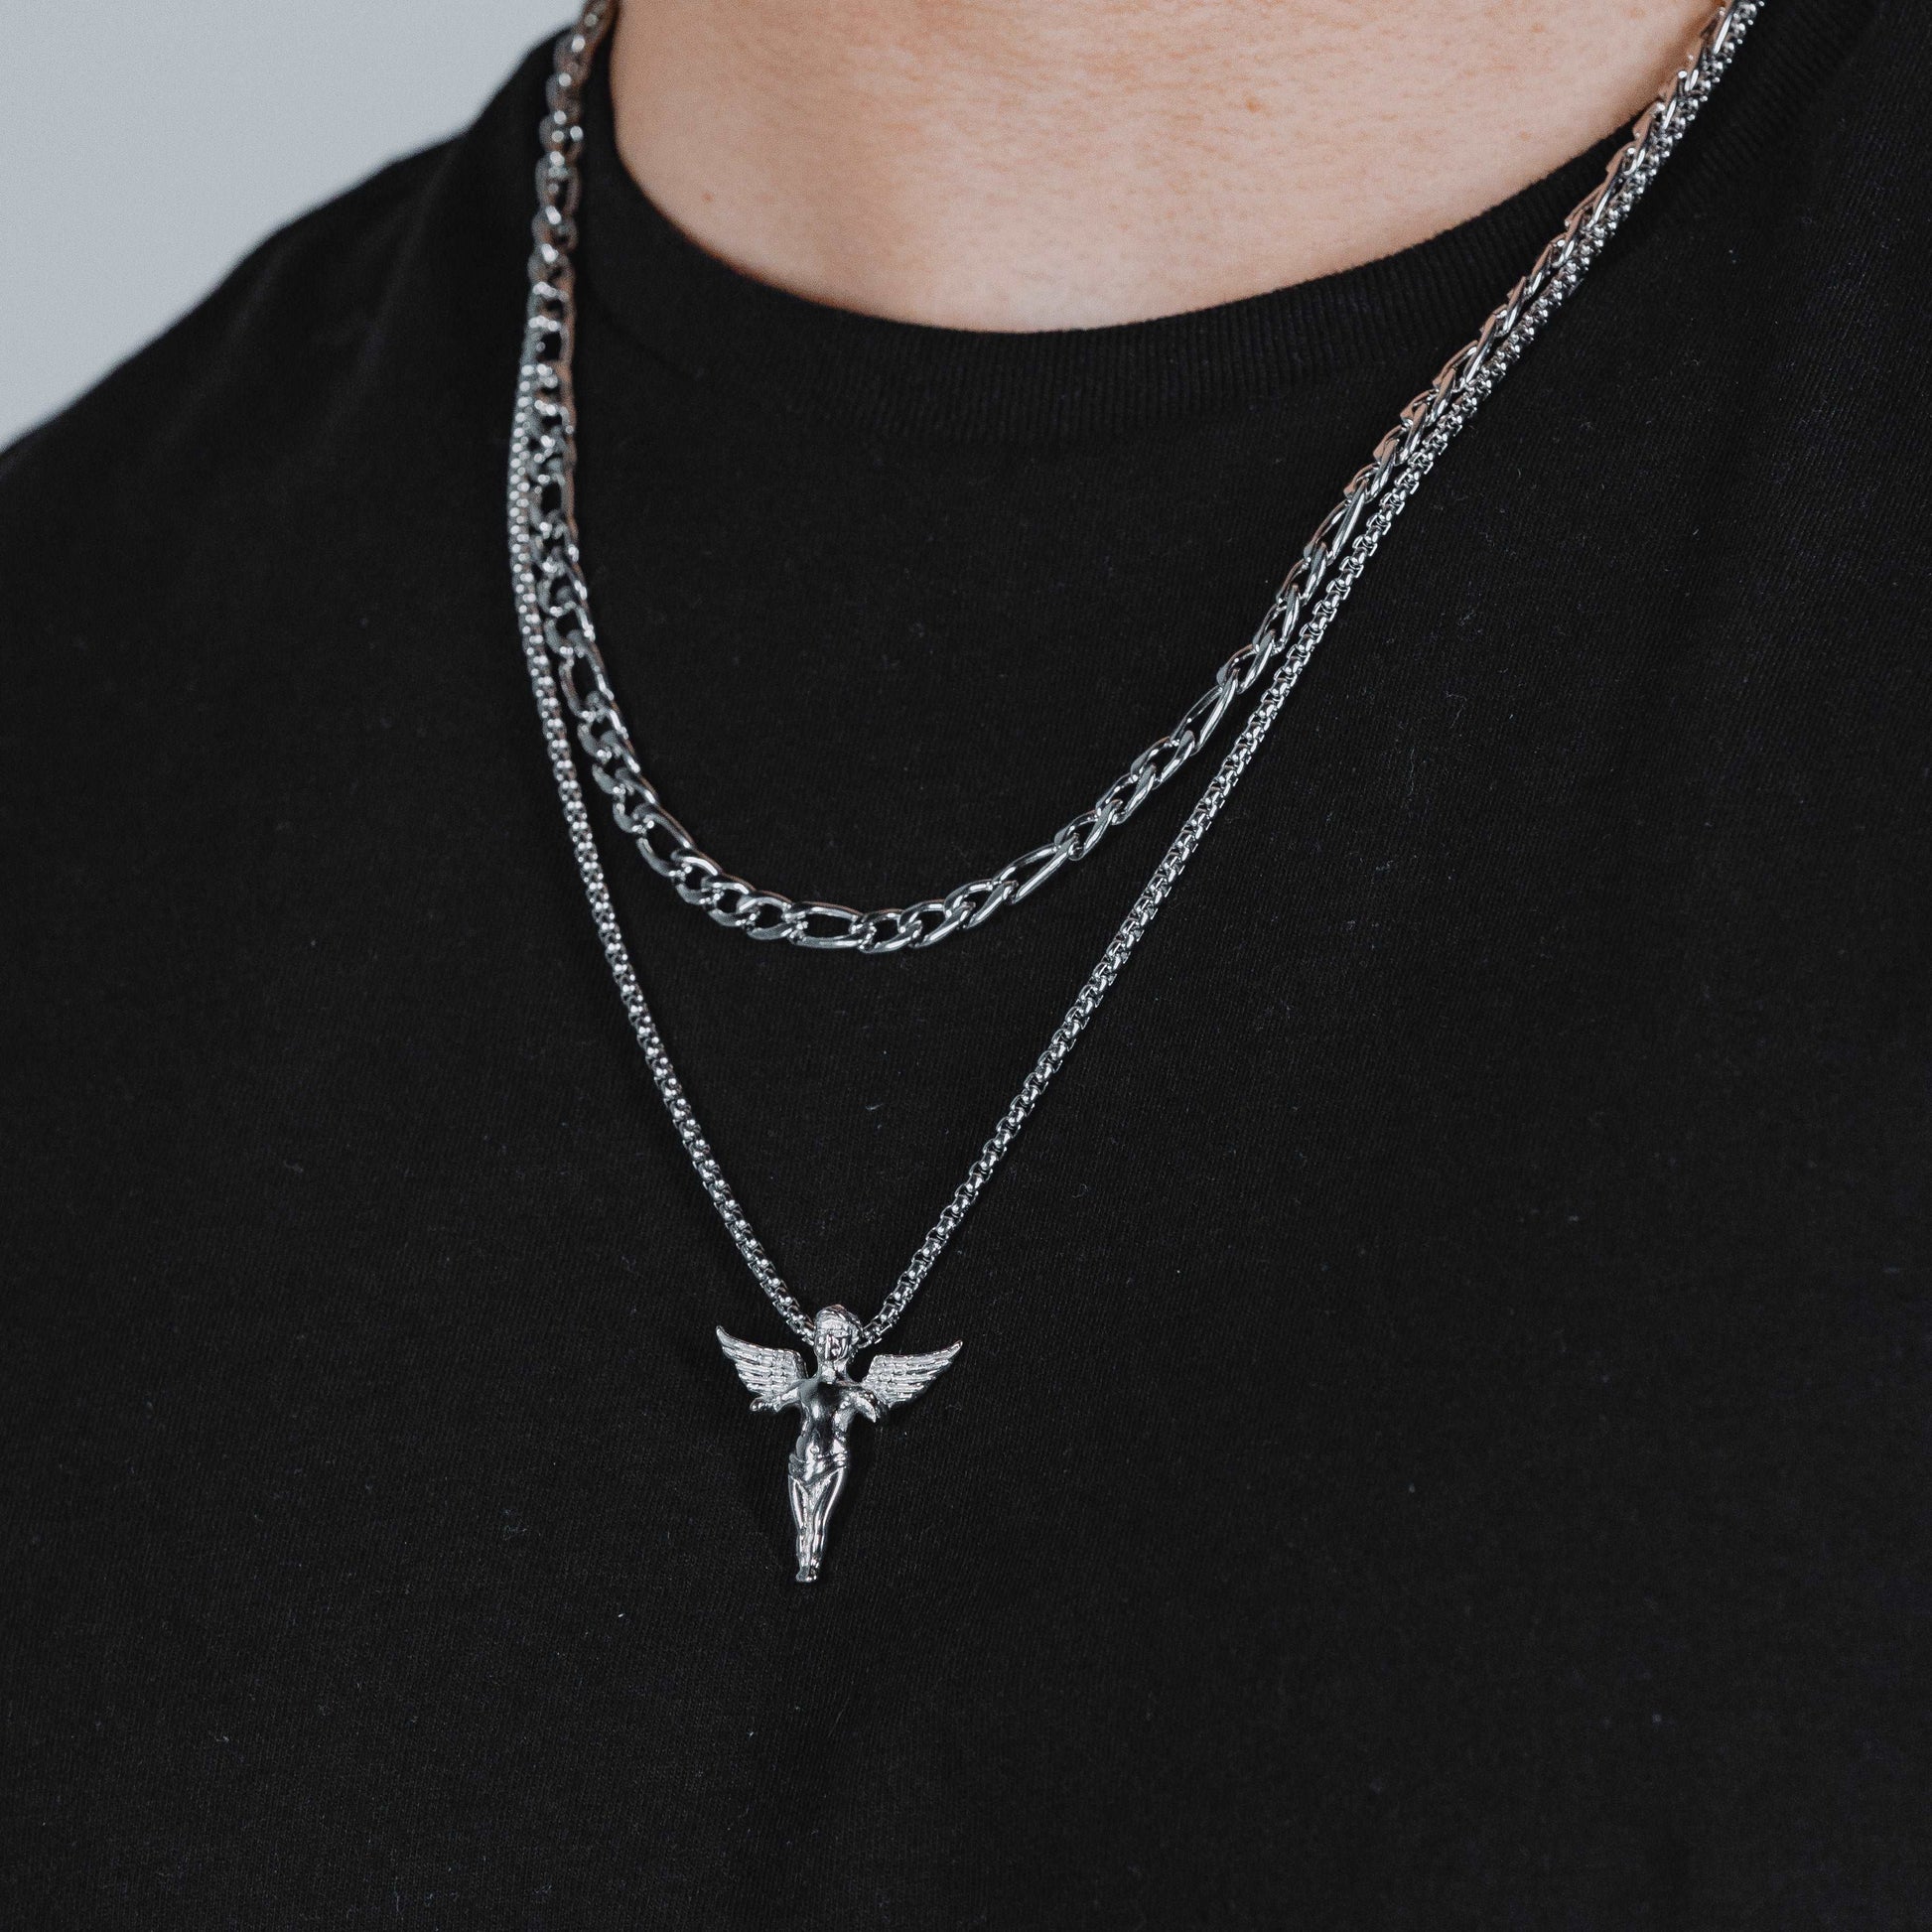 Pendant X Chain (Silver)